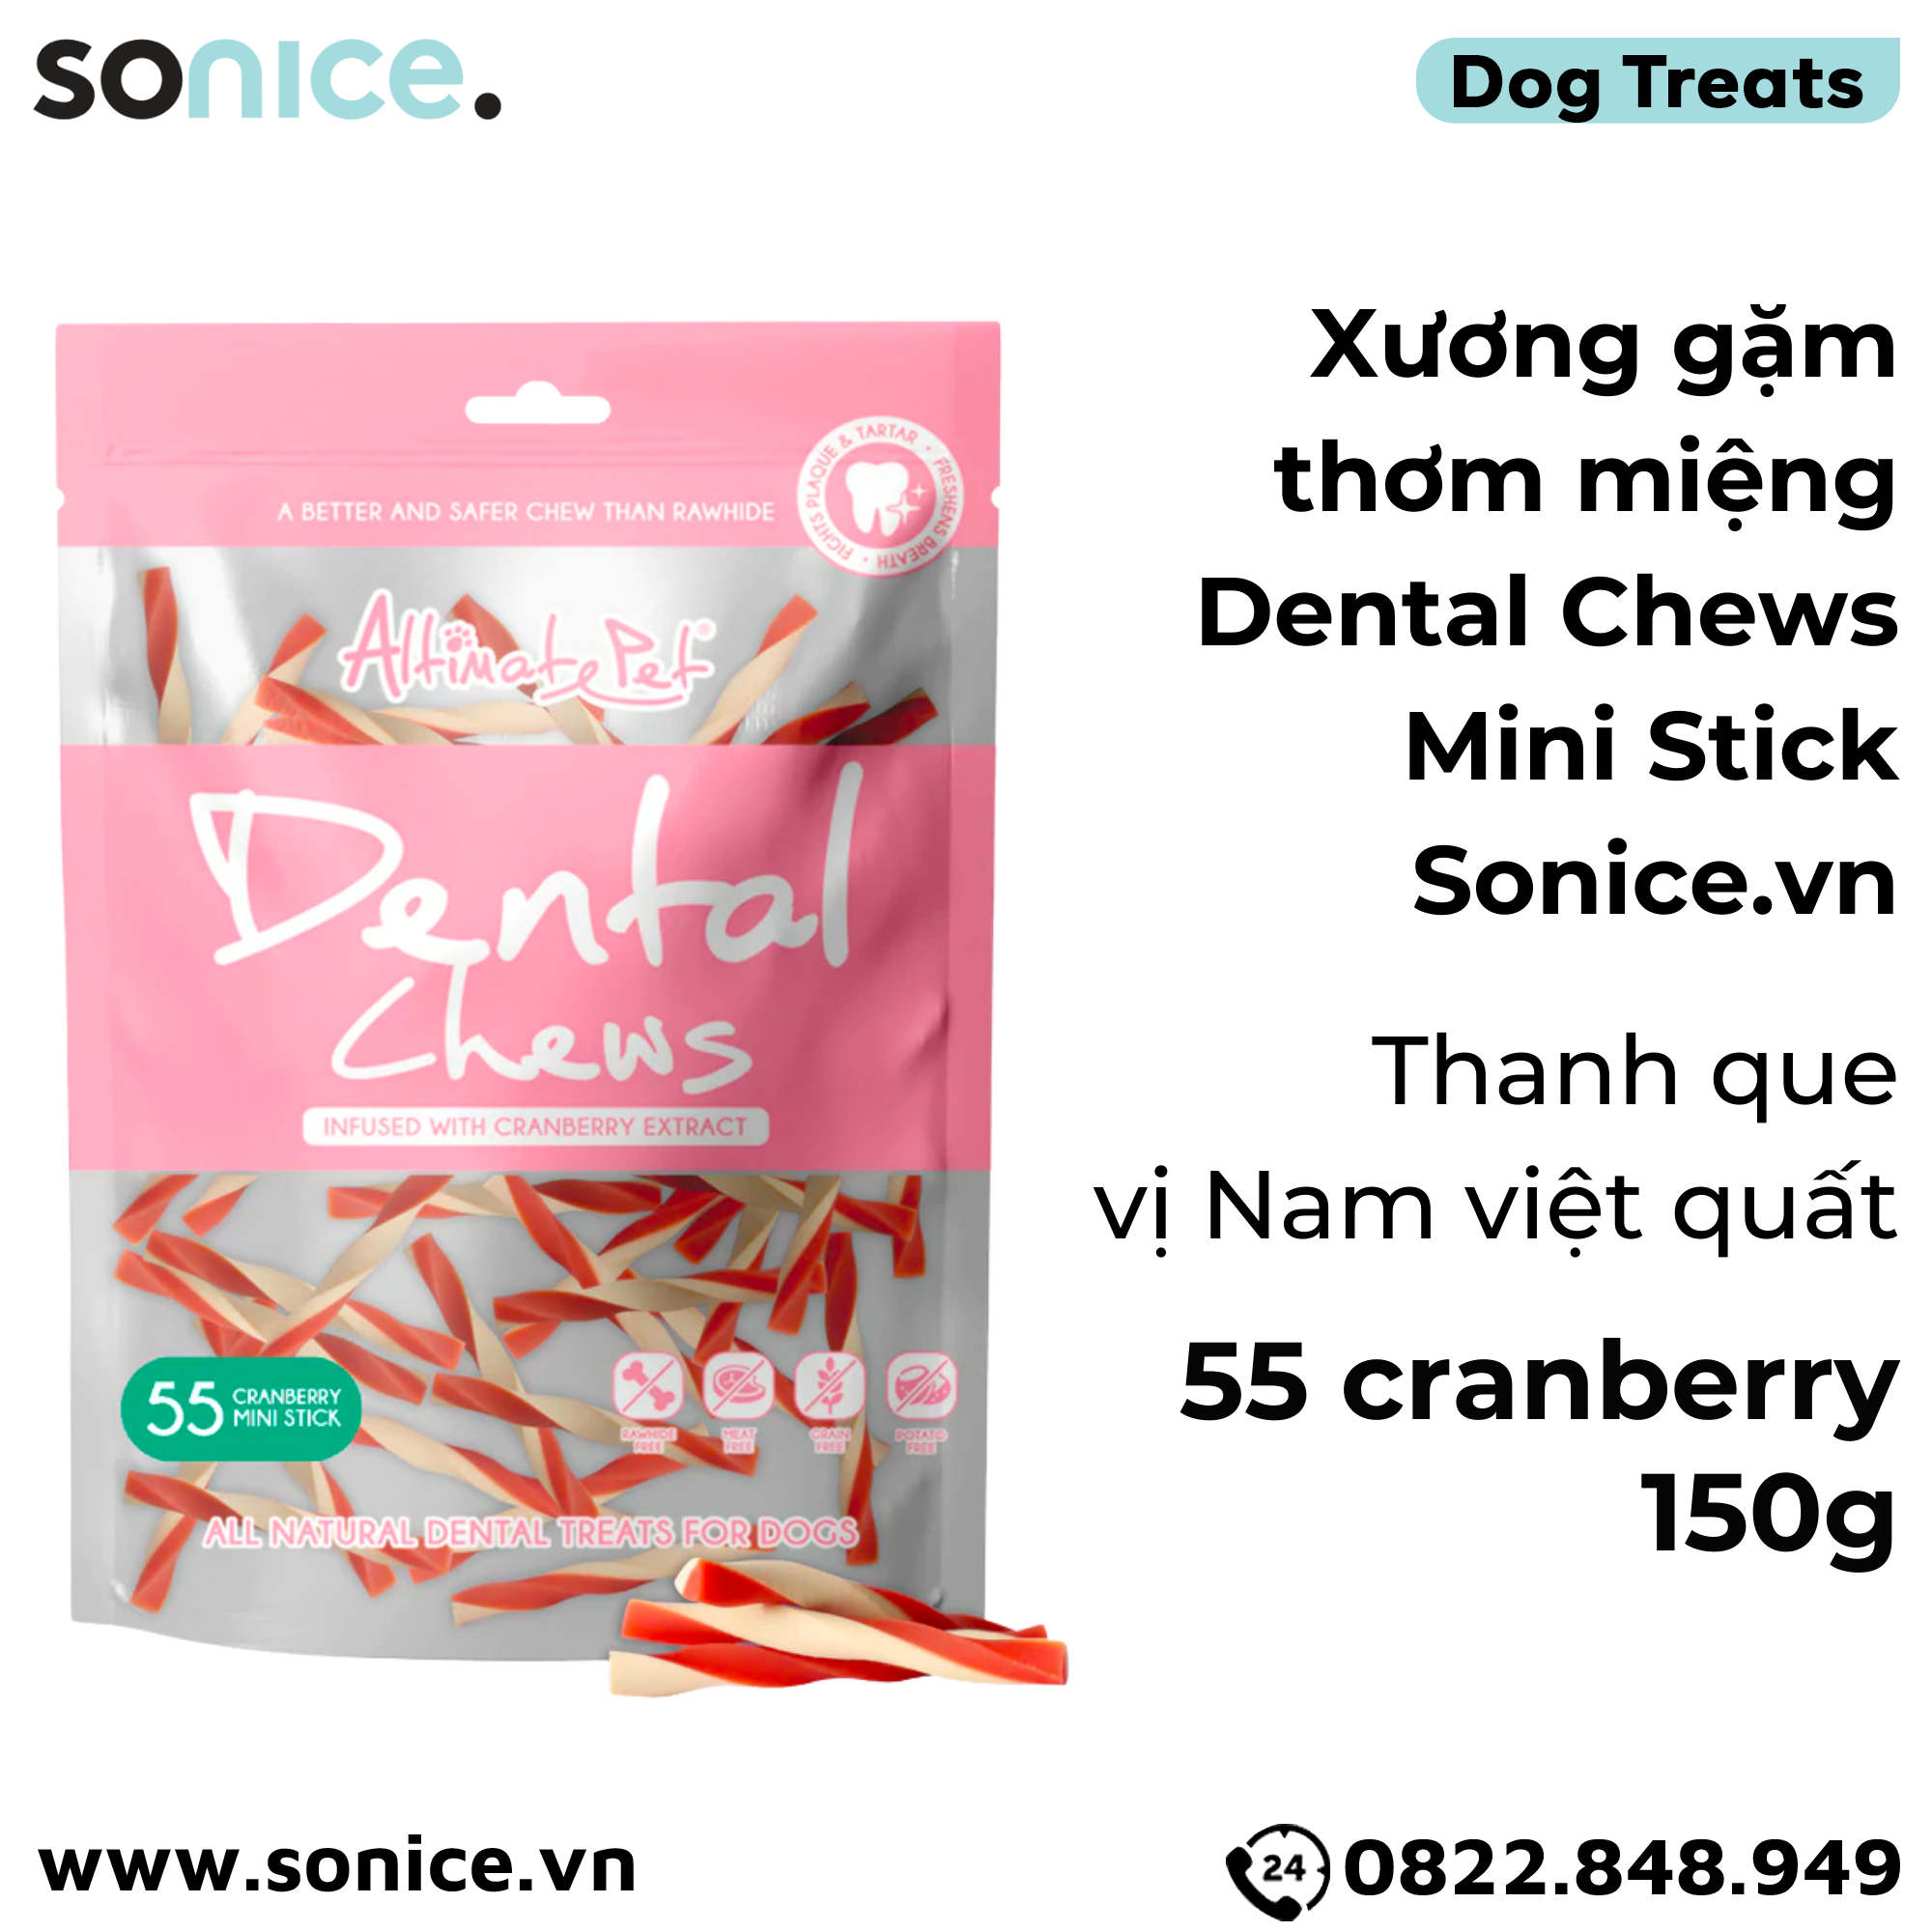  Xương gặm thơm miệng Dental Chews Mini Stick 150g - 55 cranberry - Thanh que vị Nam việt quất SONICE. 